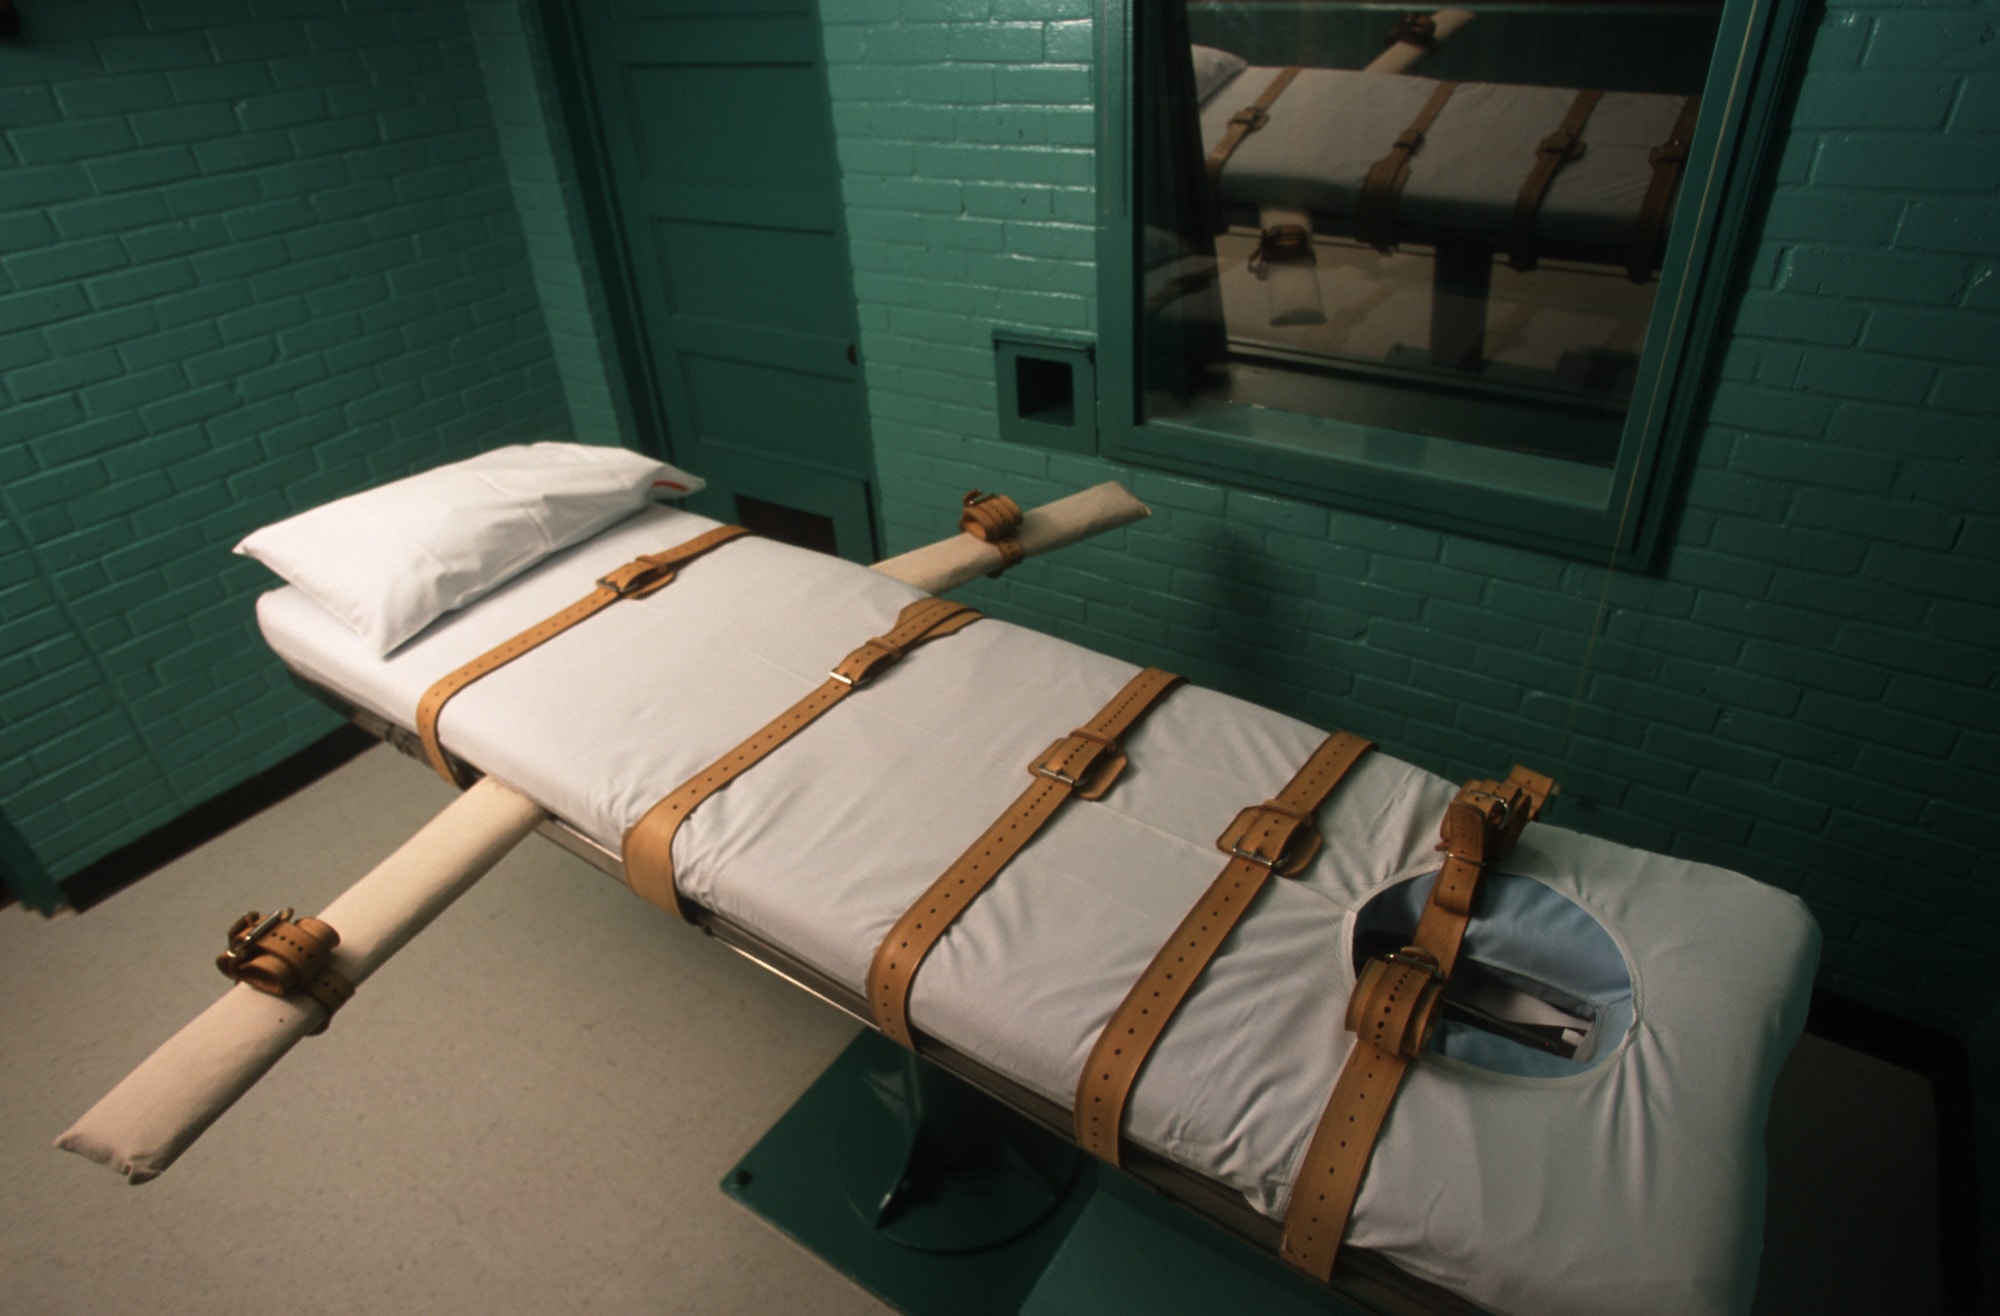 5 indignantes casos en los que aplicaron pena de muerte a inocentes